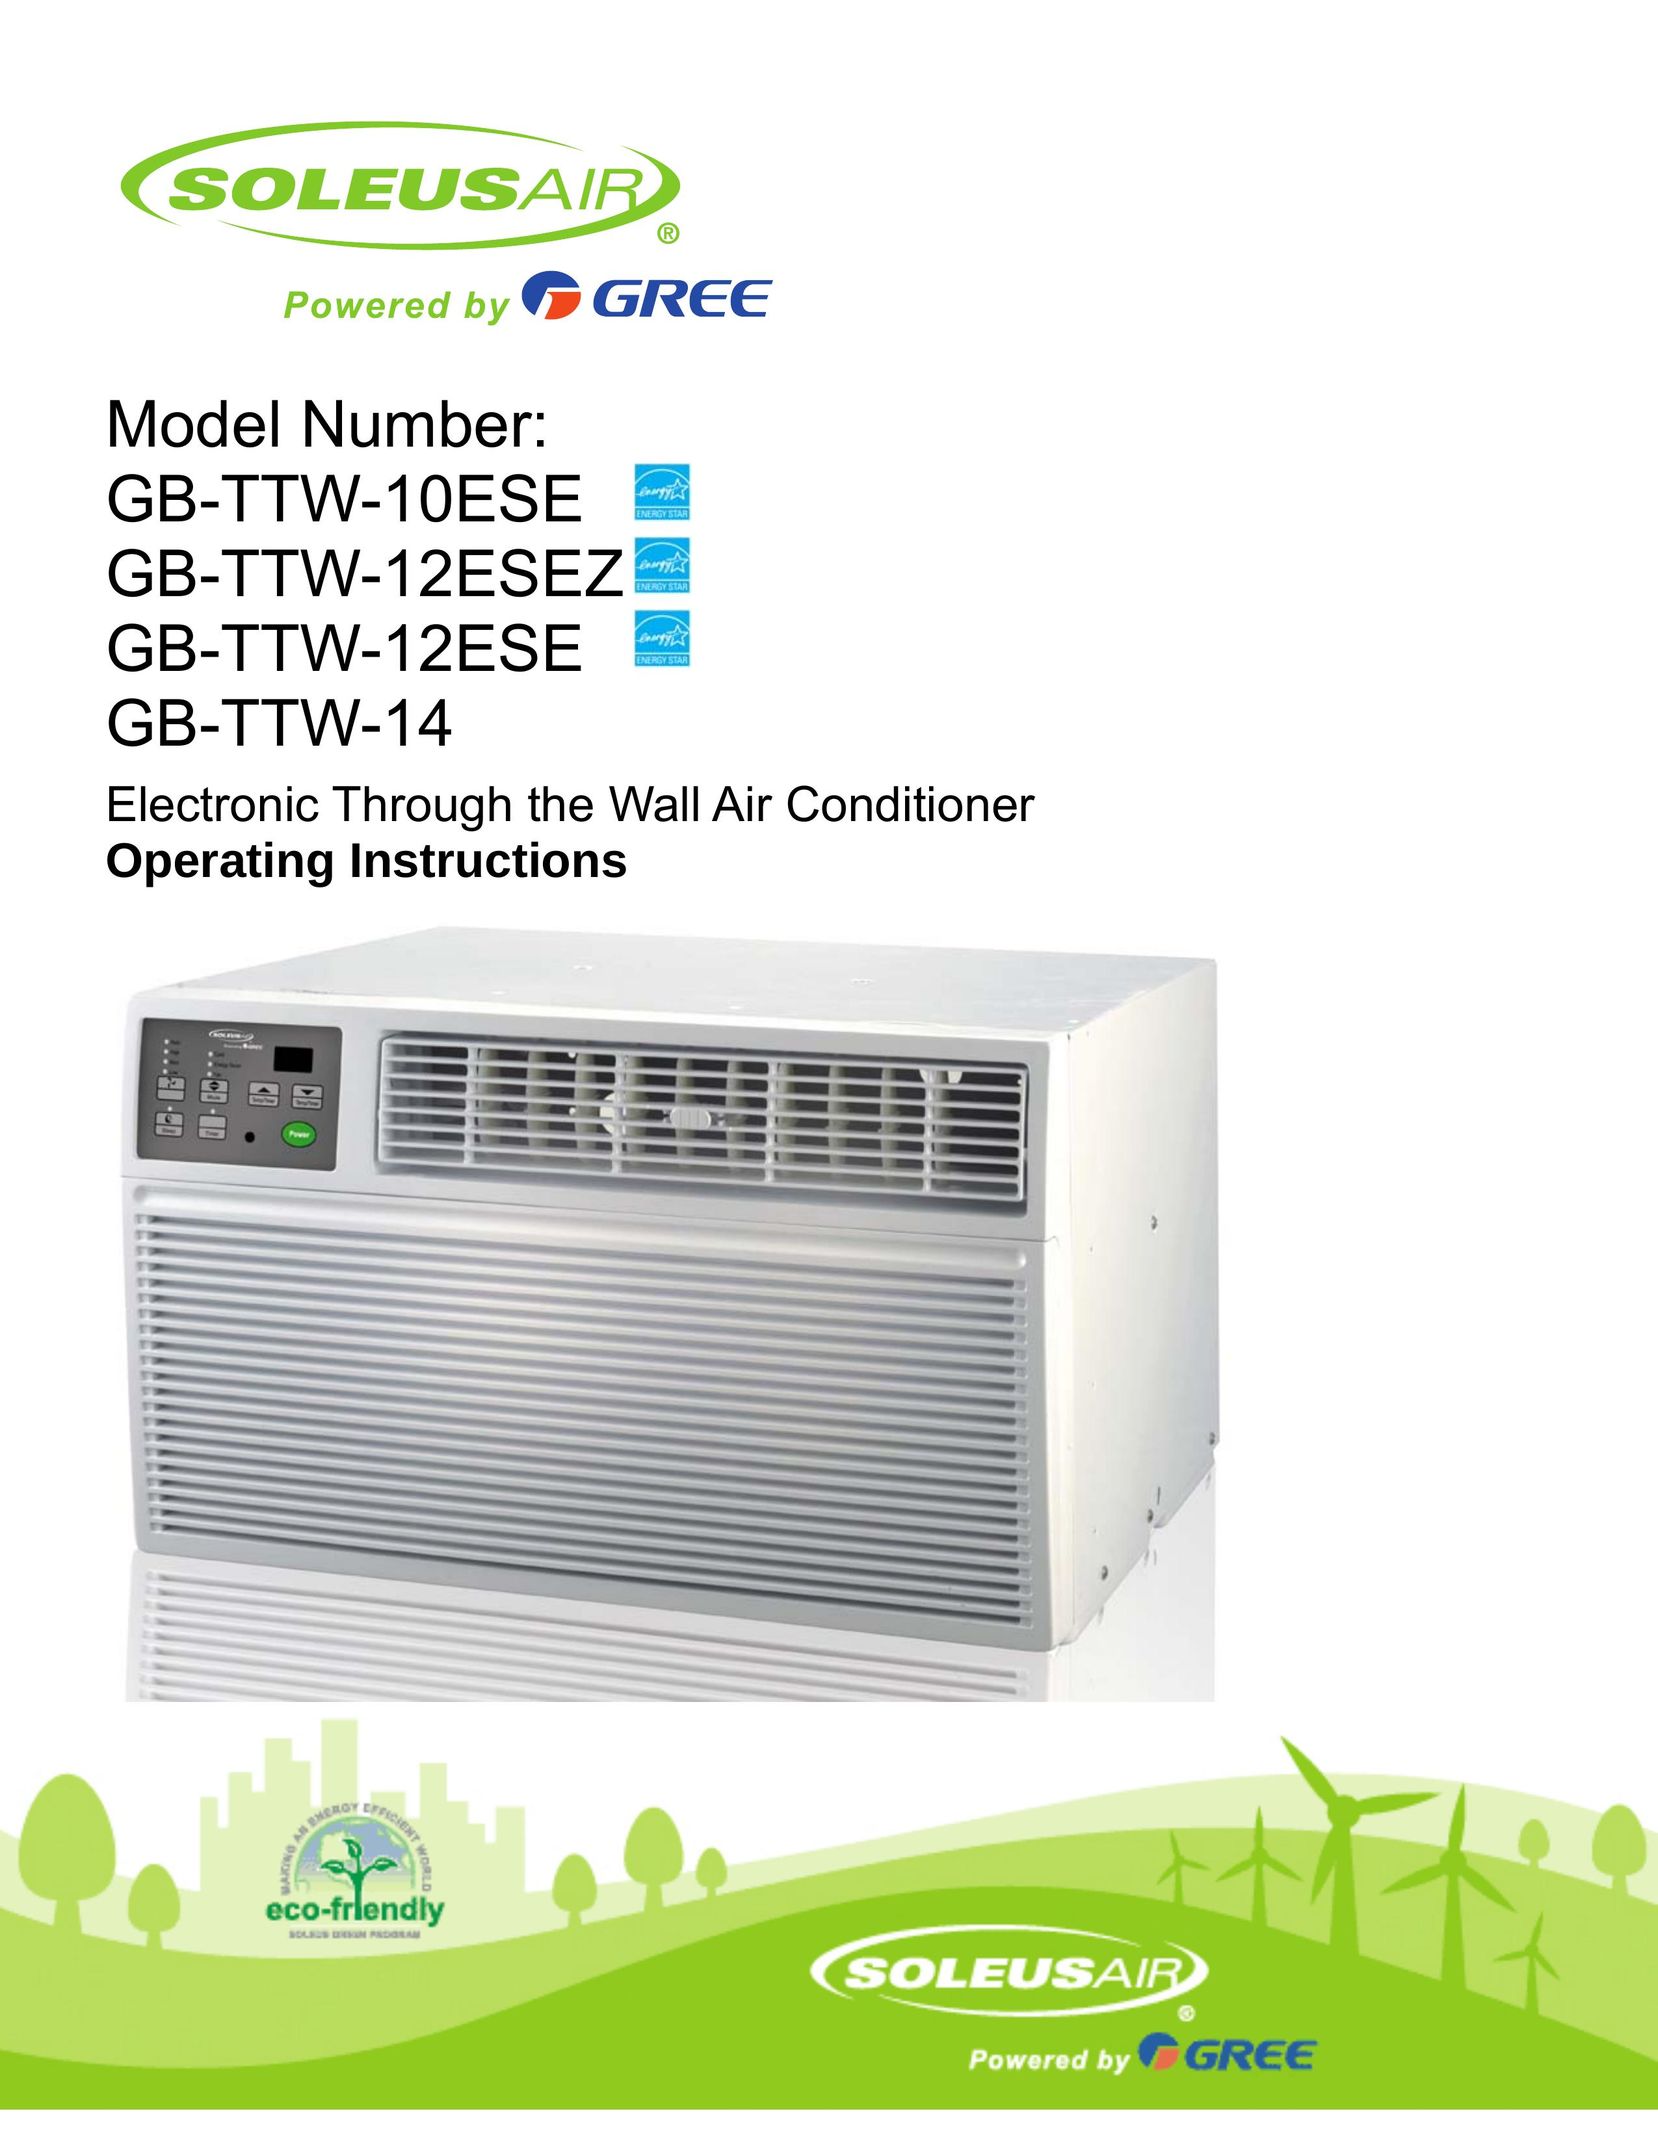 Soleus Air GB-TTW-10ESE Air Conditioner User Manual